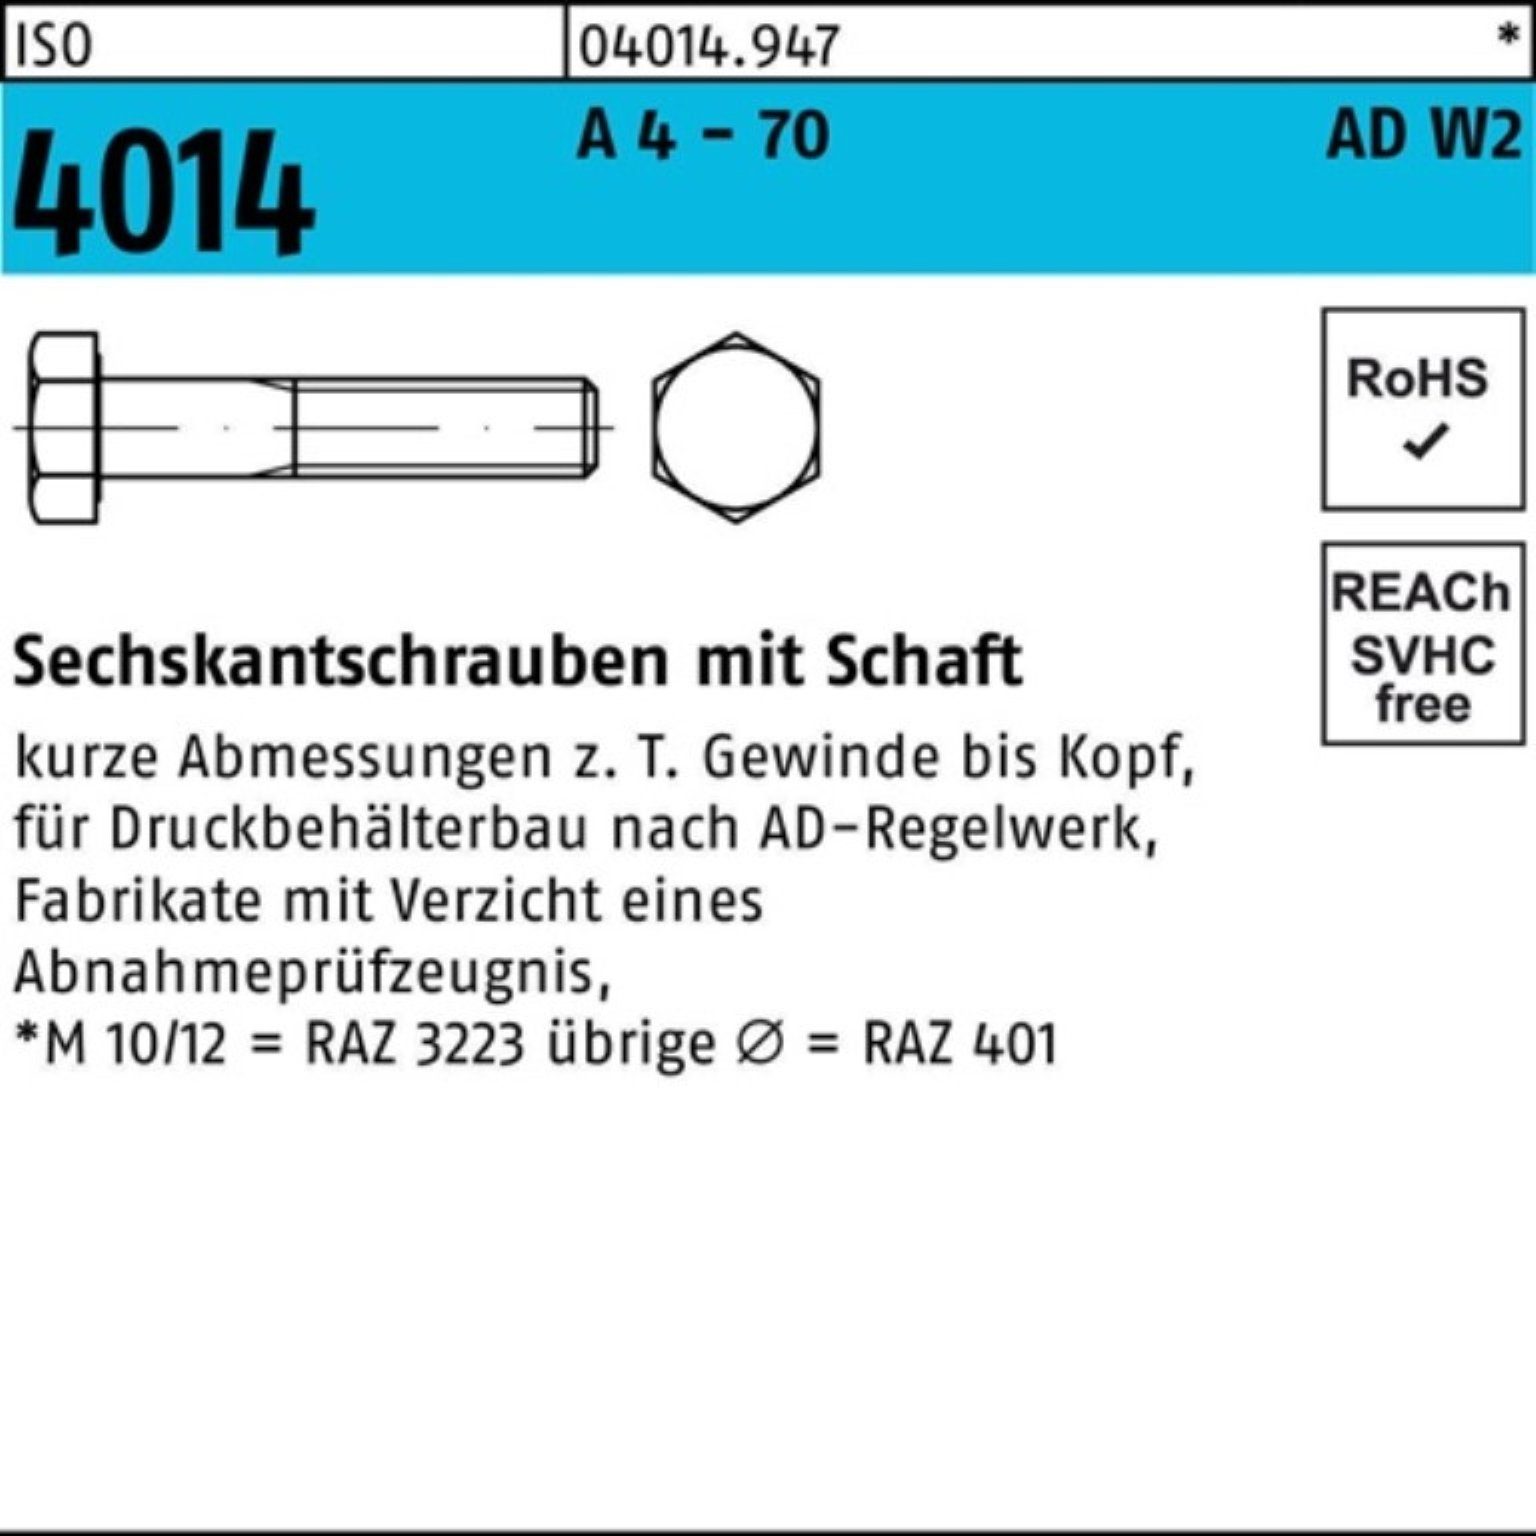 Bufab Sechskantschraube 100er Pack Sechskantschraube ISO 4014 Schaft M10x 130 A 4 - 70 AD-W2 1